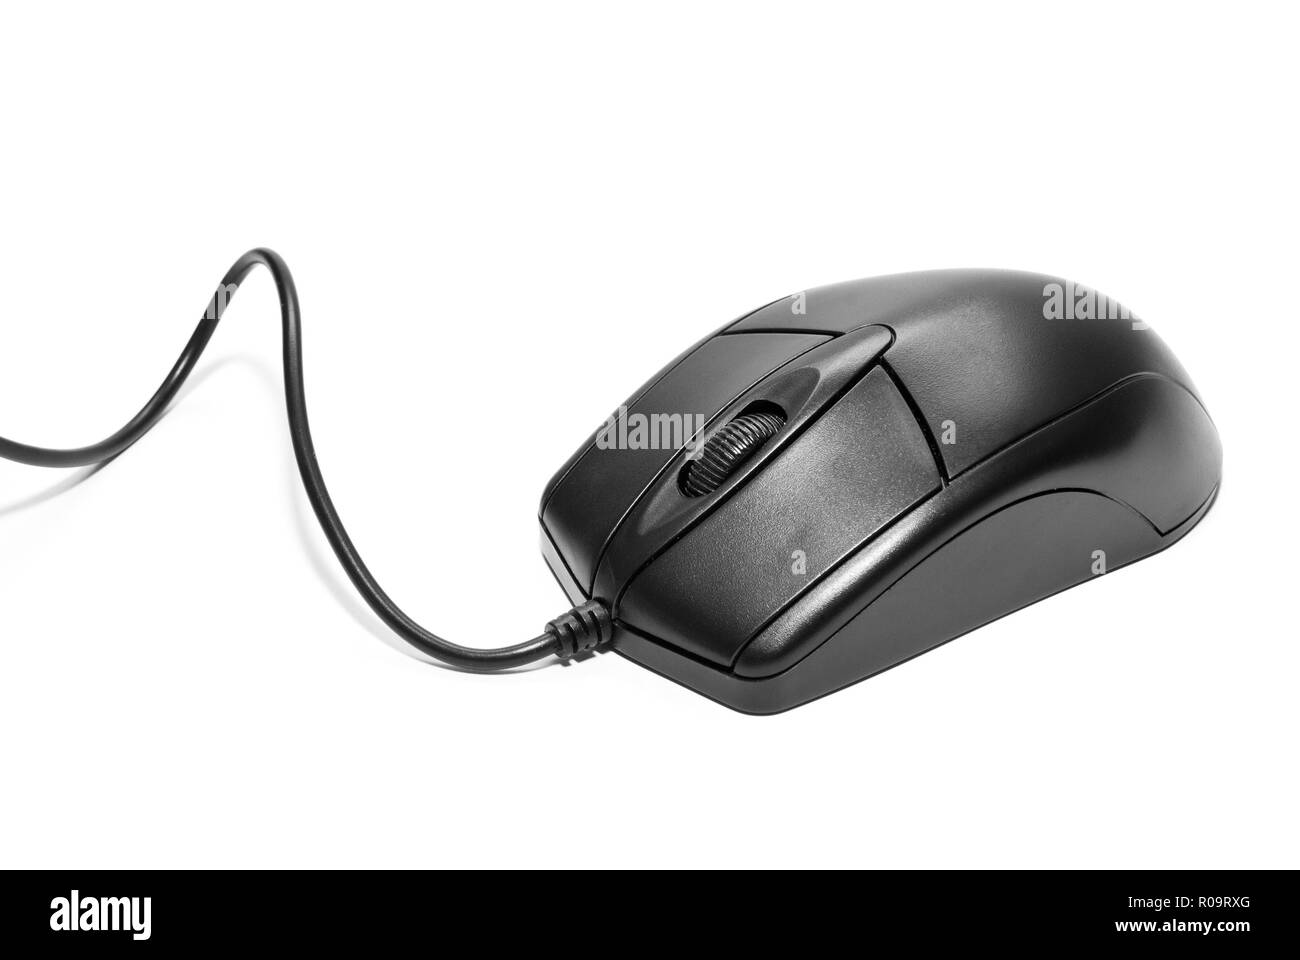 Computer-Maus auf einem weißen Hintergrund isoliert Stockfoto